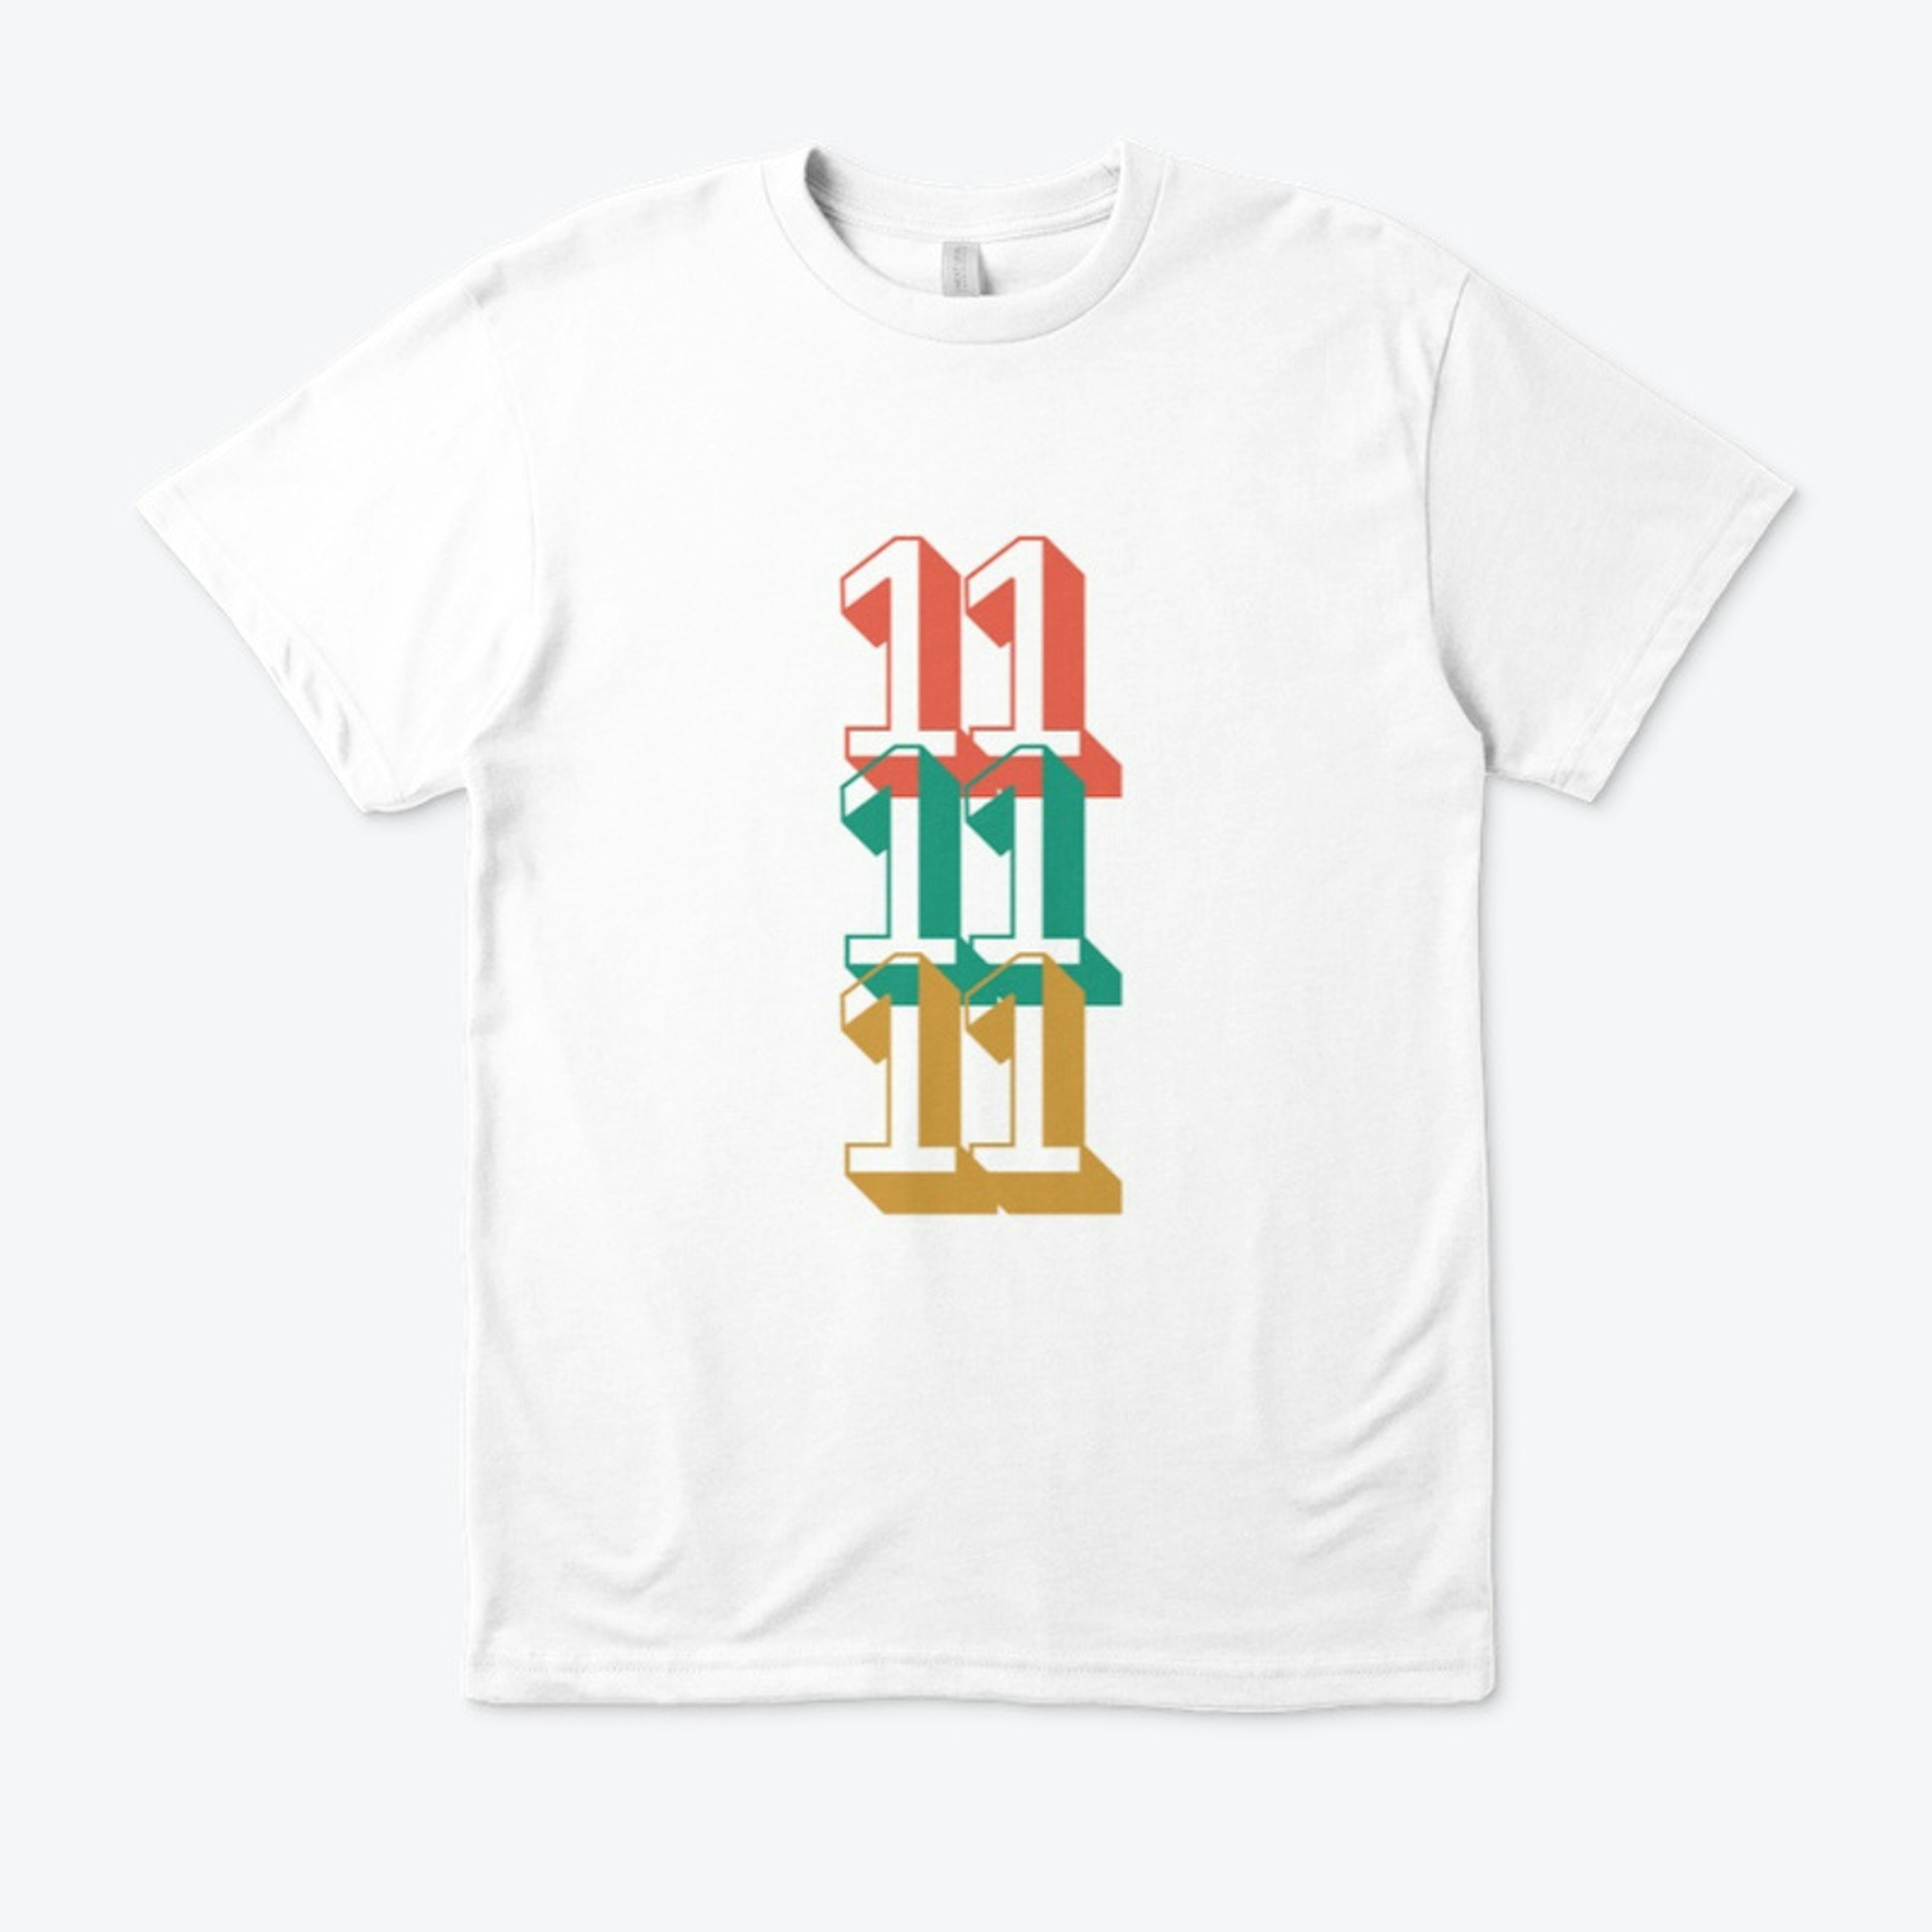 11 t-shirt design